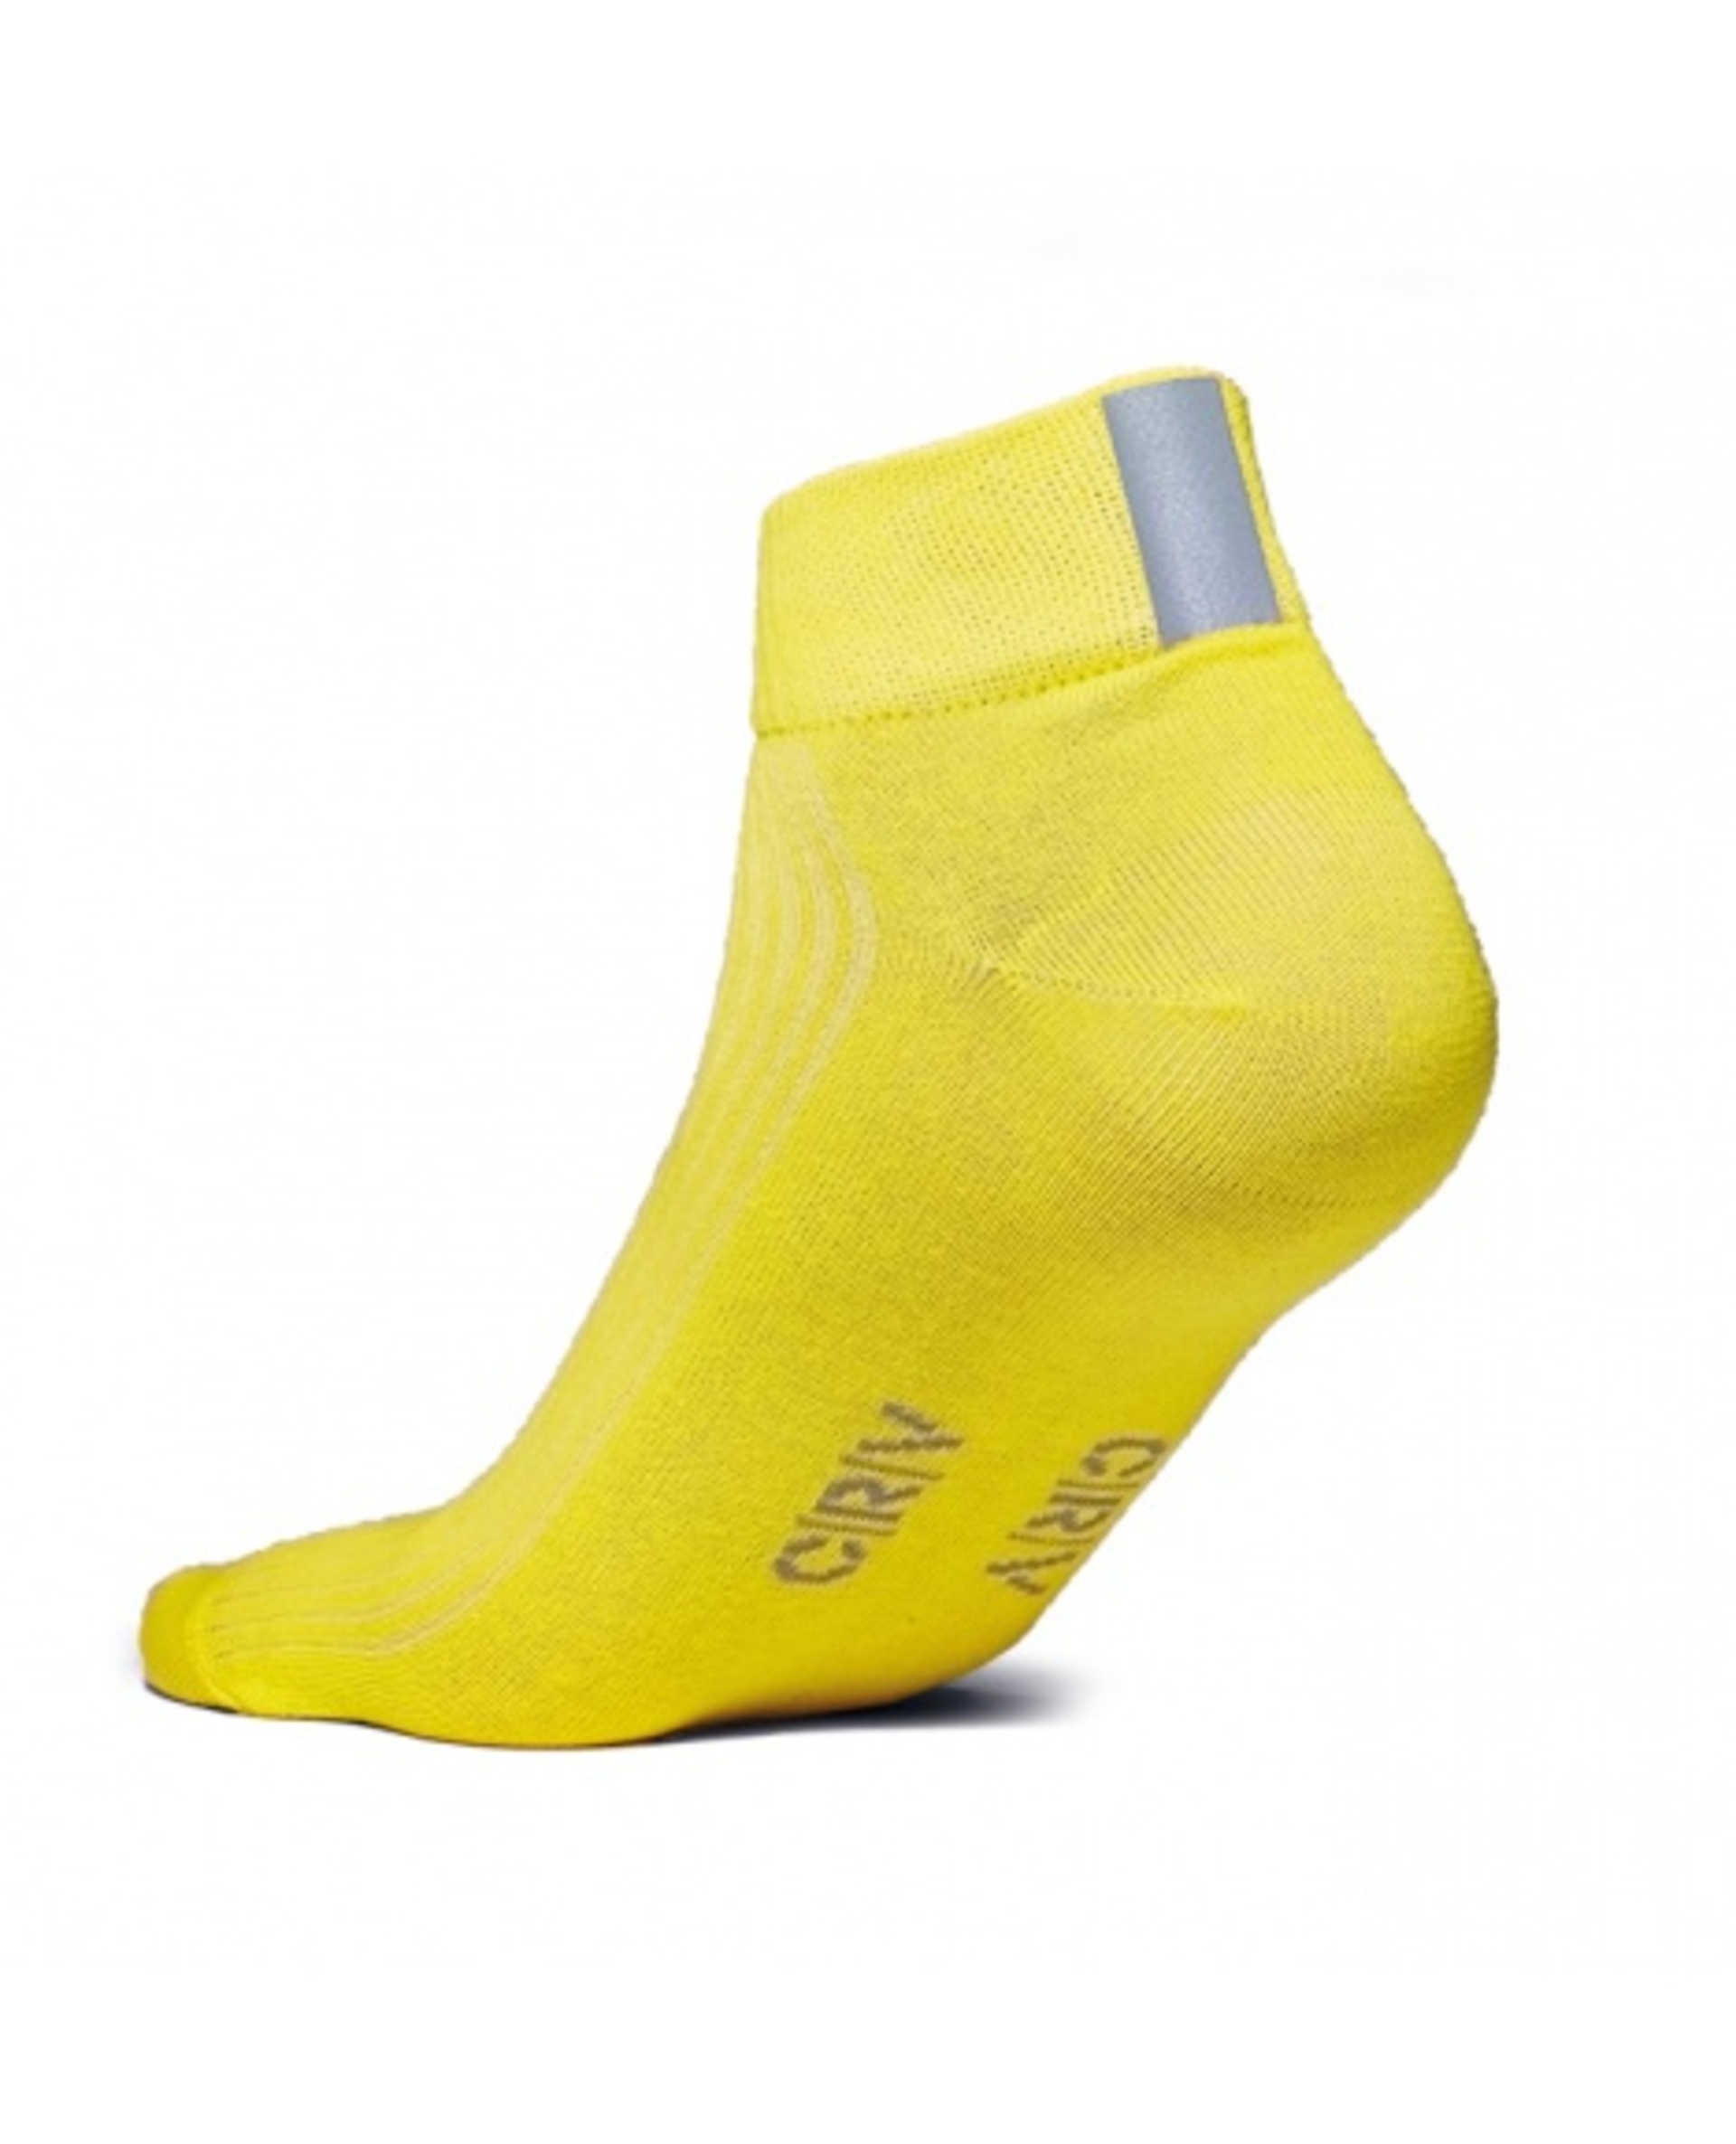 Ponožky kotníkové CRV ENIF žlutá  45-46